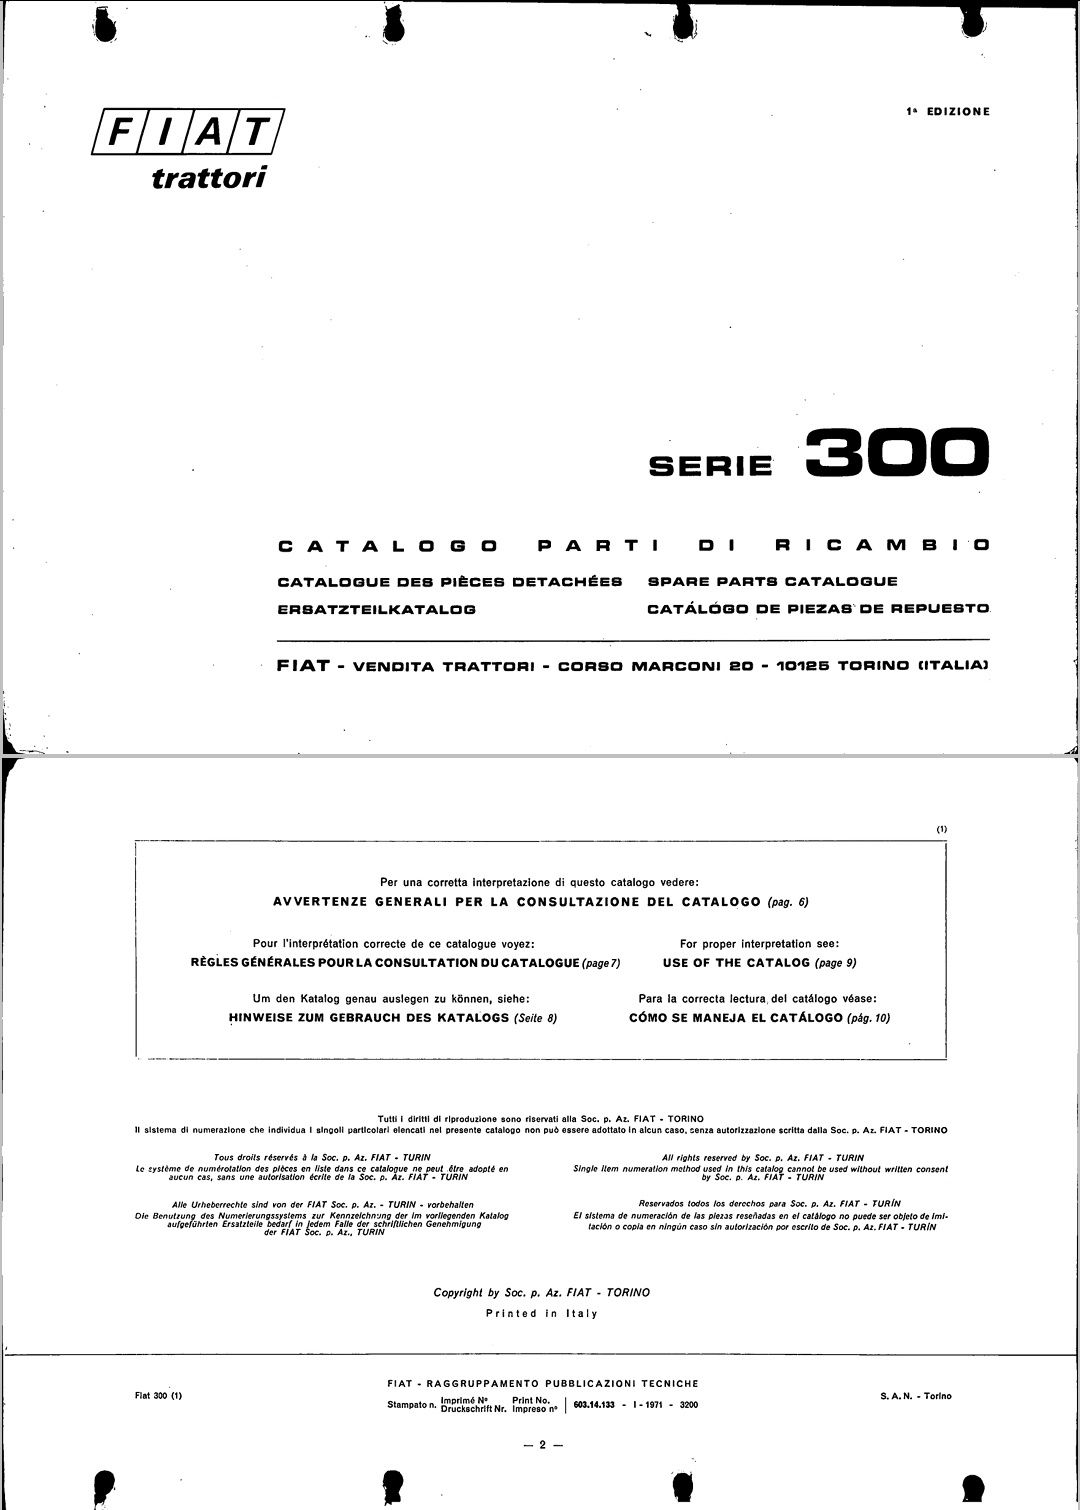 Manual tehnic de utilizare si intretinere - Fiat 250 / 300 / 300DT